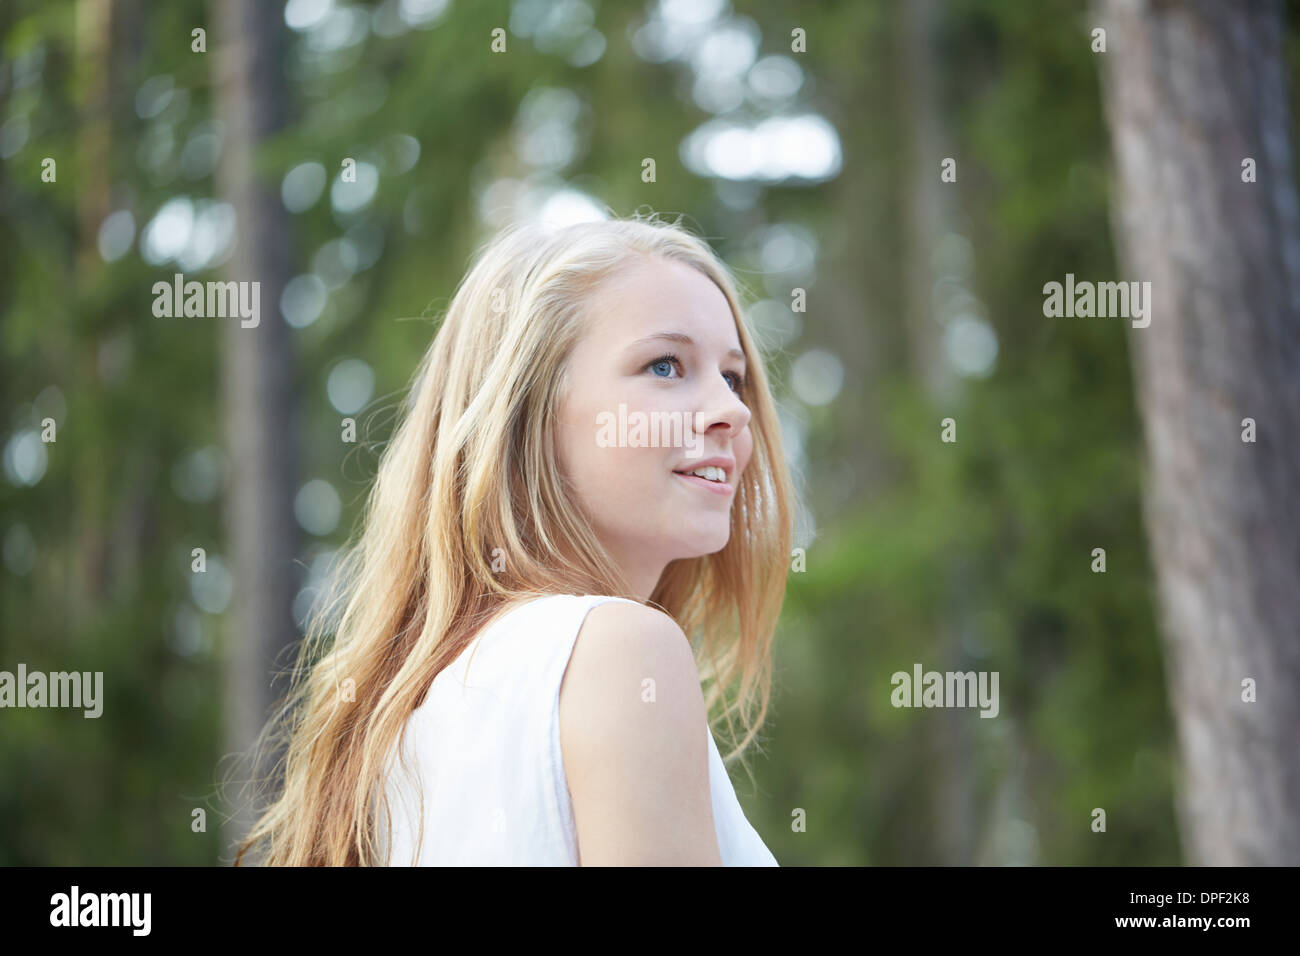 Ritratto di ragazza adolescente con lunghi capelli biondi che guarda lontano Foto Stock